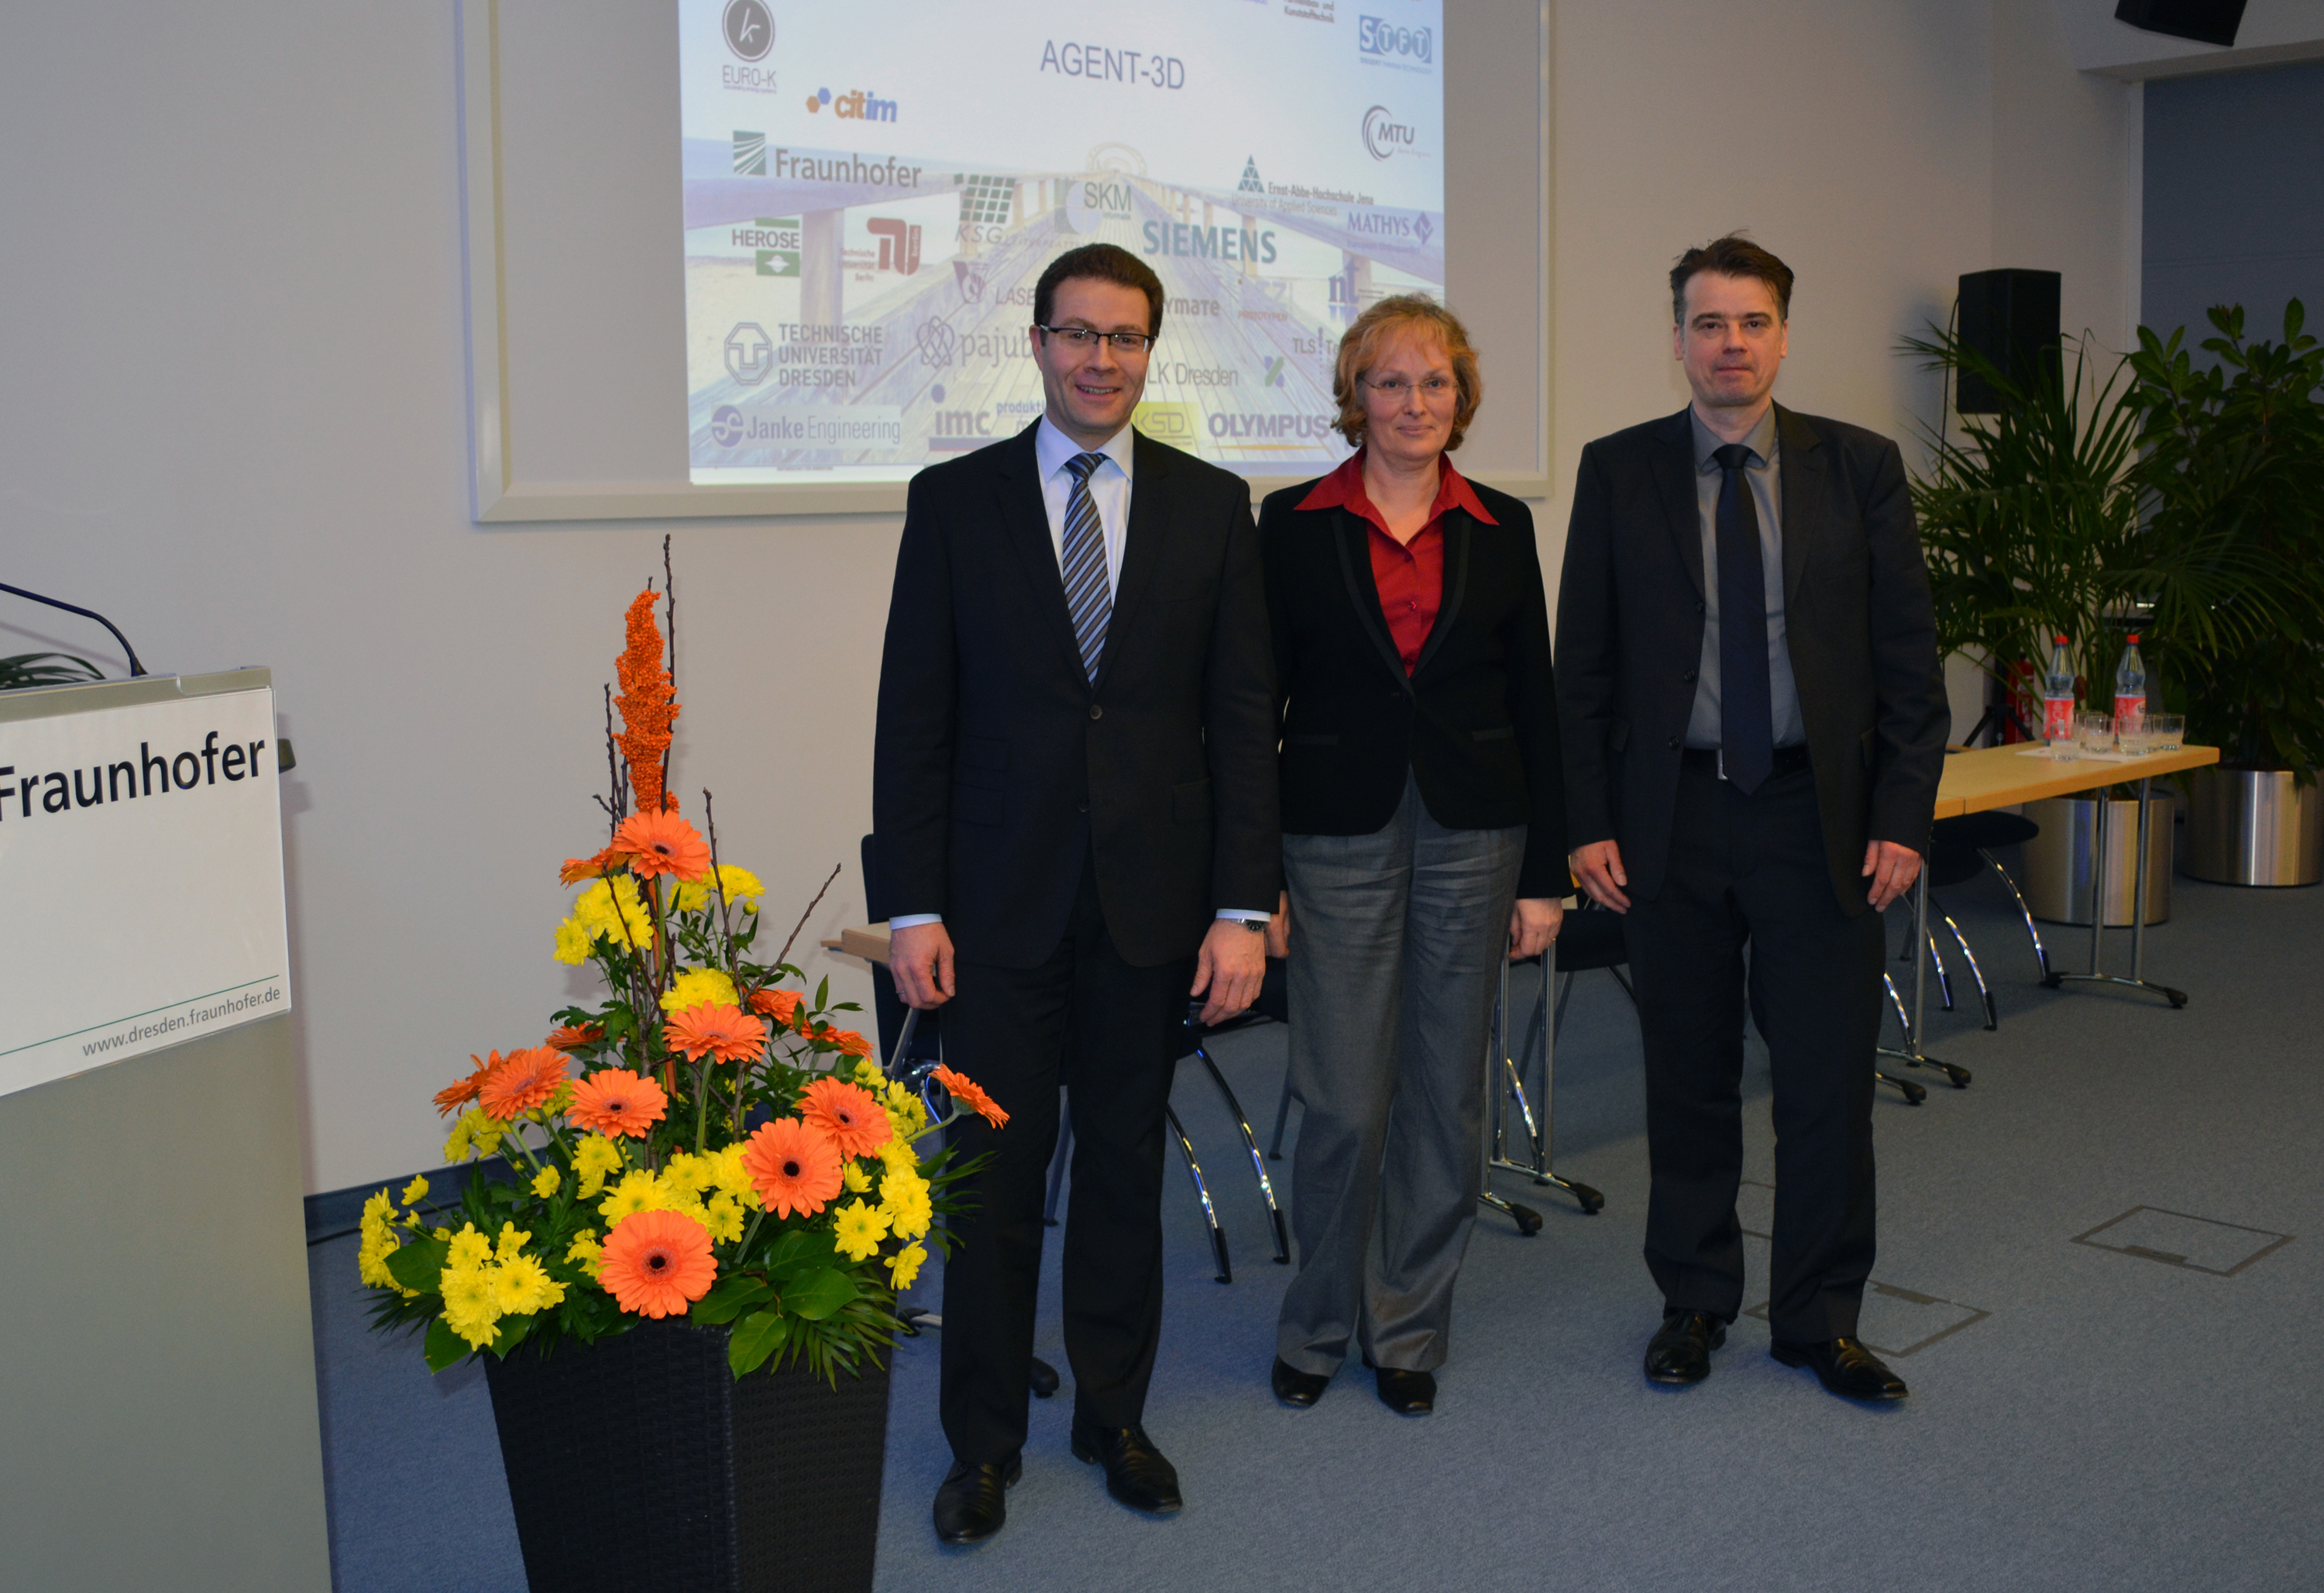 Vorstand AGENT-3D e.V.: Prof. Dr. Christoph Leyens, Dr. Janny Lindemann, Hr. Martin Schäfer (v. l. n. r.)